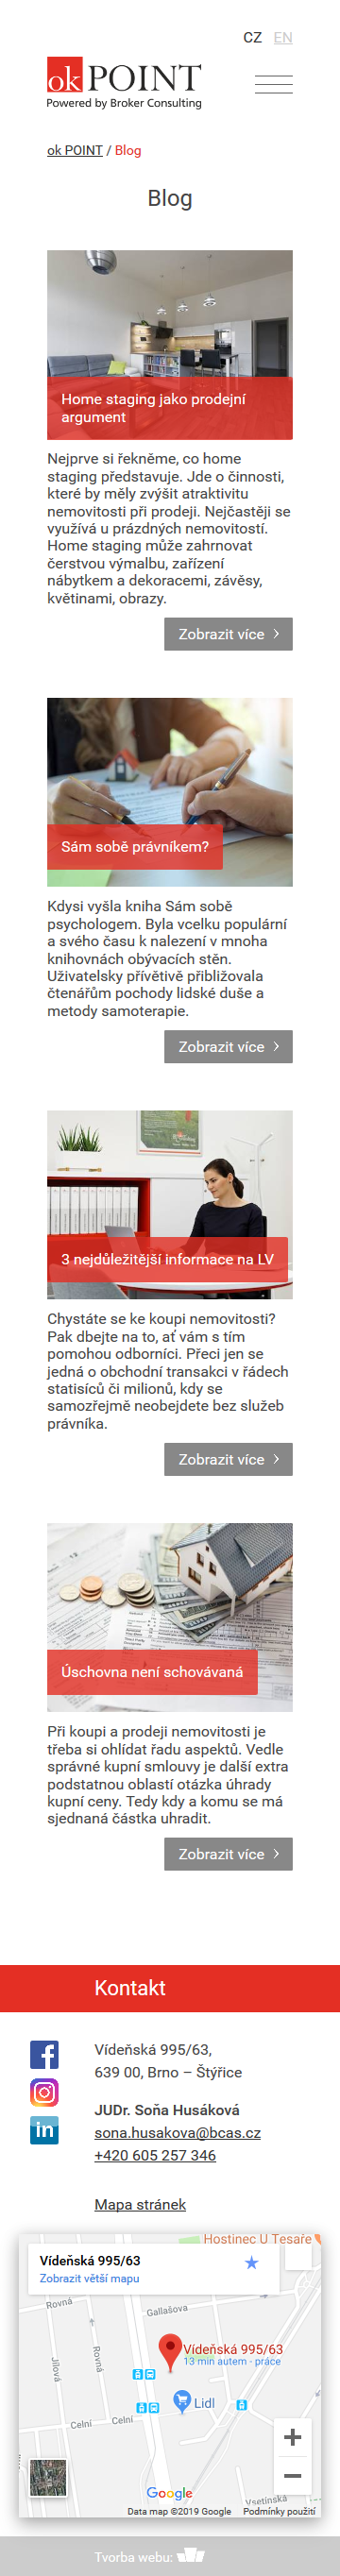 Tvorba firemního webu sonahusakova.cz - Screenshot mobilní verze